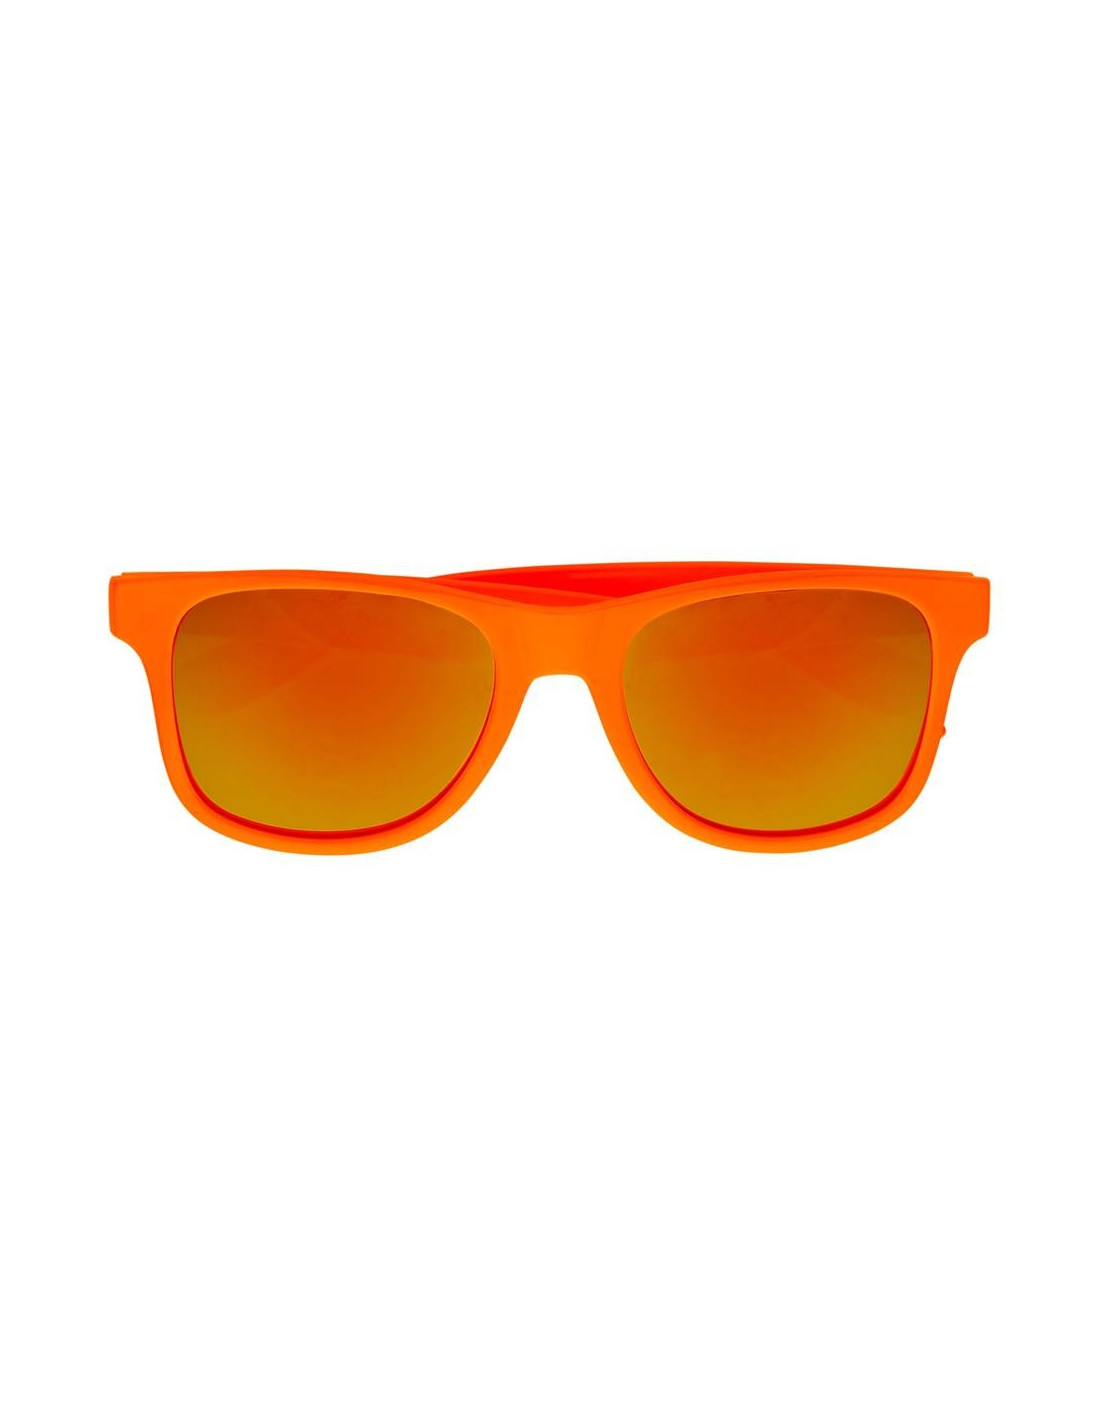 Gafas de los años 80´s color Naranja Neón Revo para Adulto - Ani